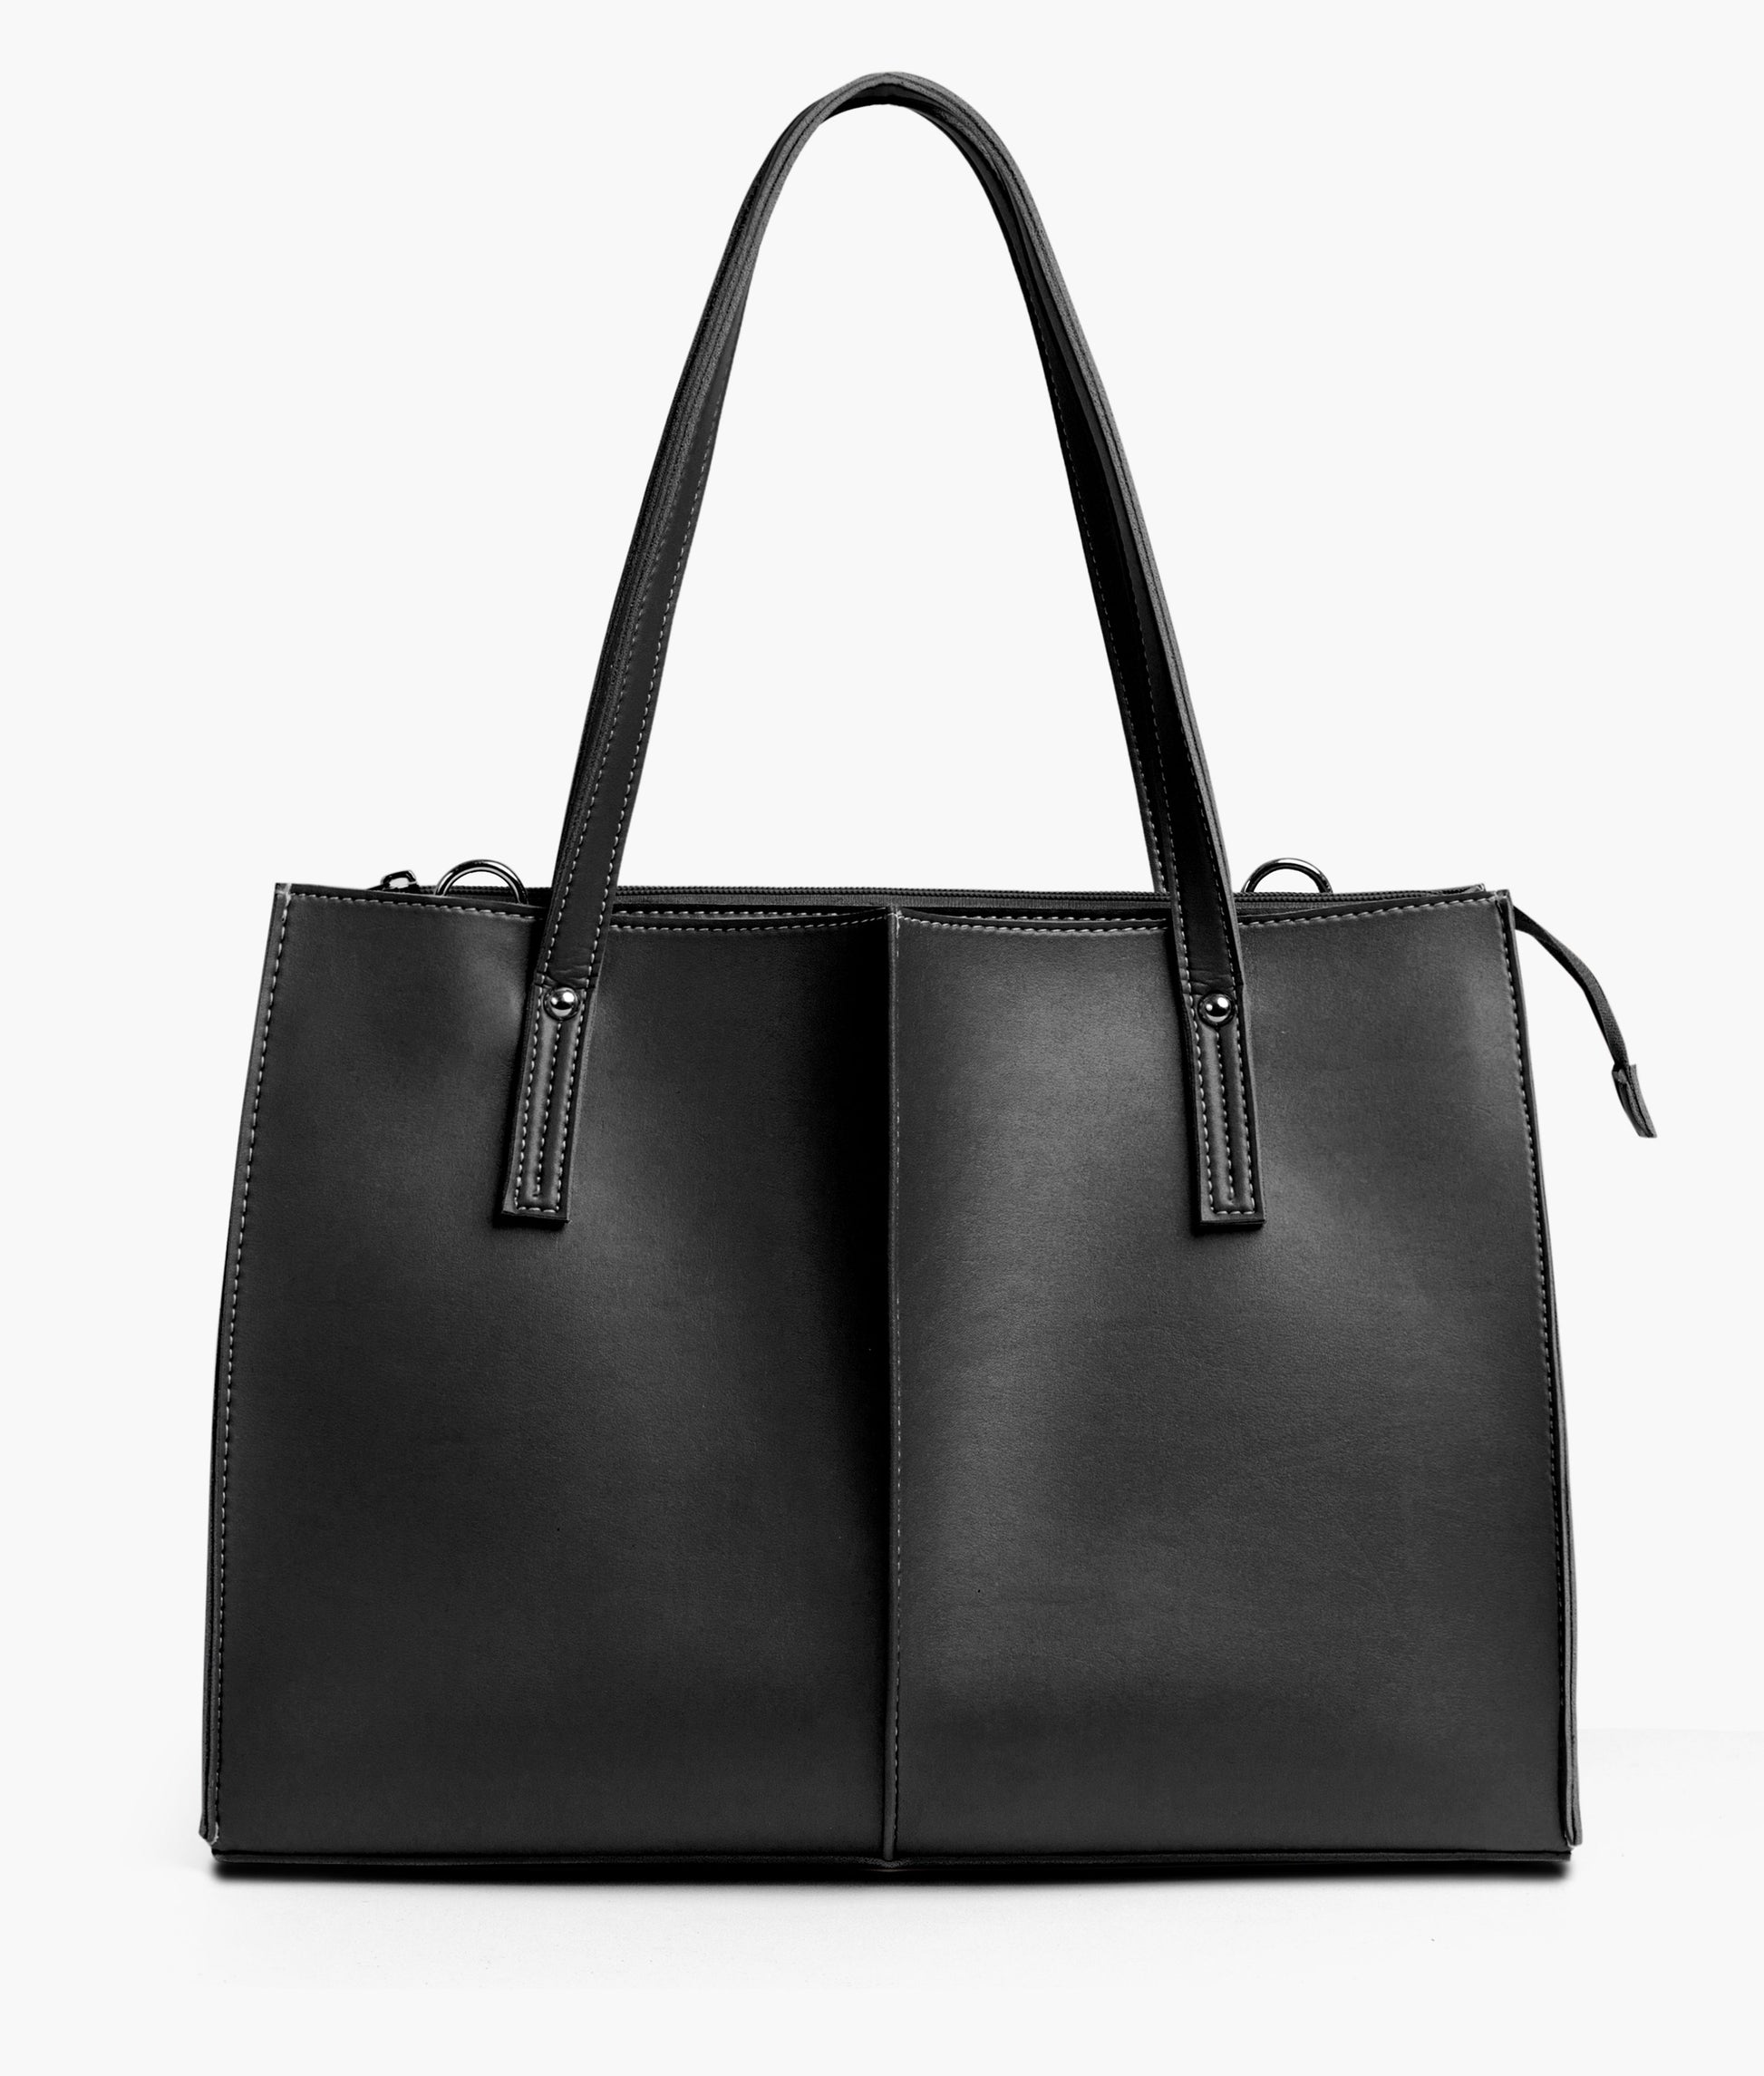 Buy Work Tote Bag - Black in Pakistan